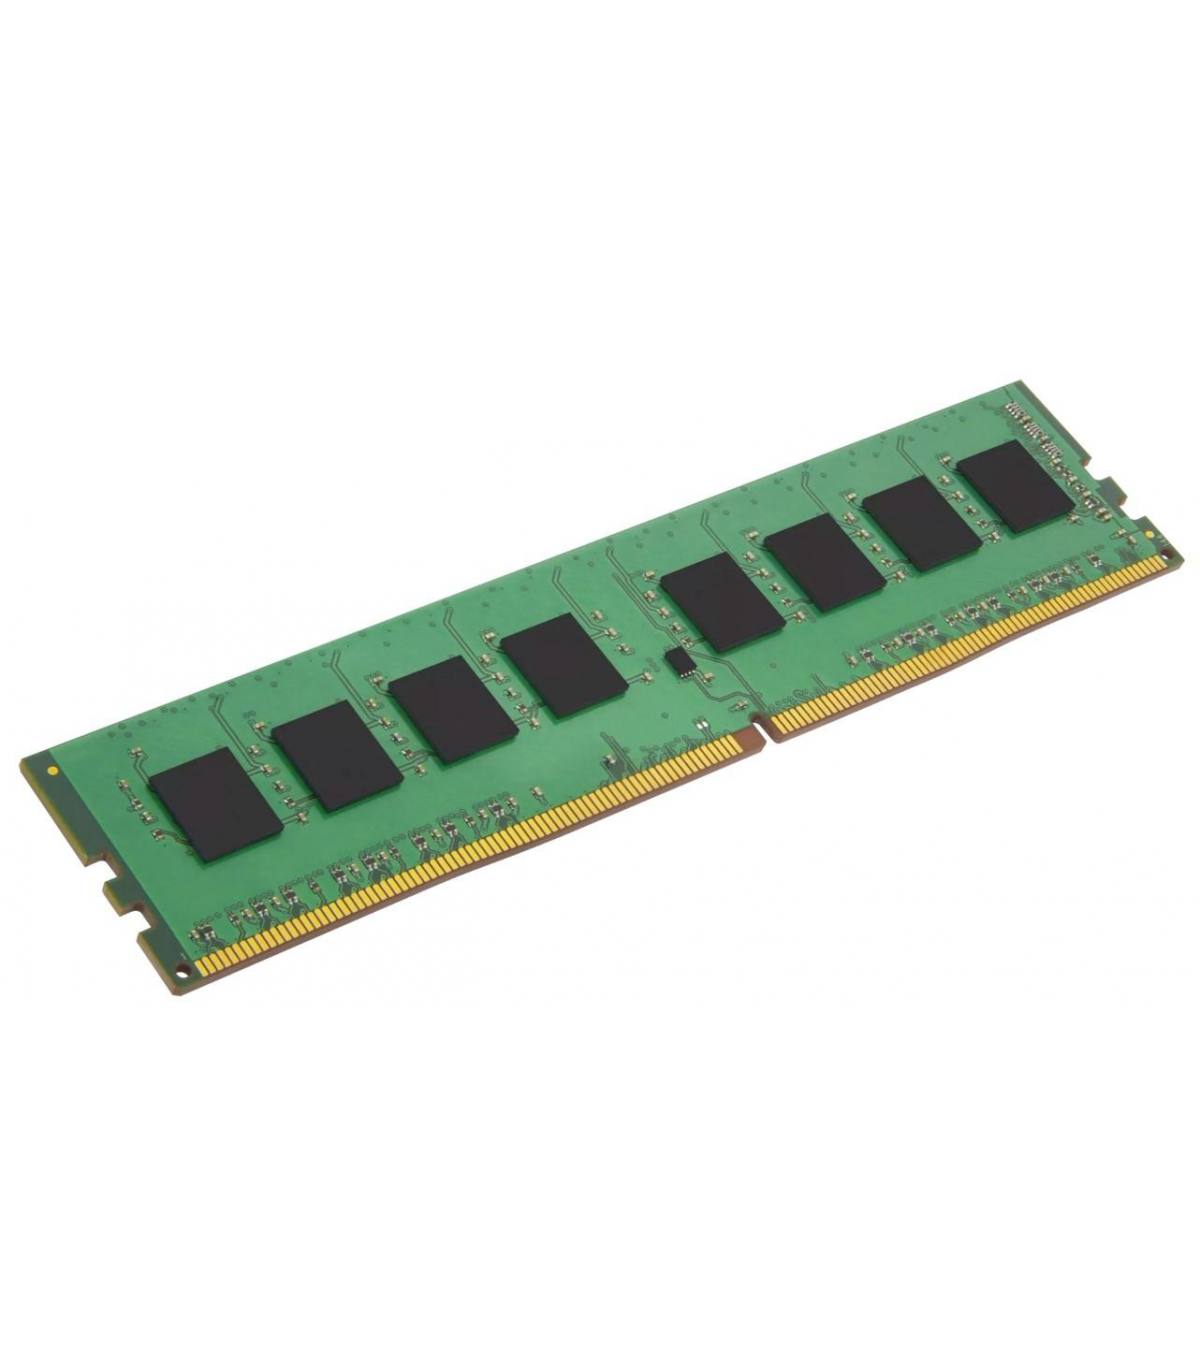 RAM MICRON/IBM 4GB 2Rx4 PC3L 10600R 49Y1412 MT36KSZF51272PZ-1G4F1AD 1023